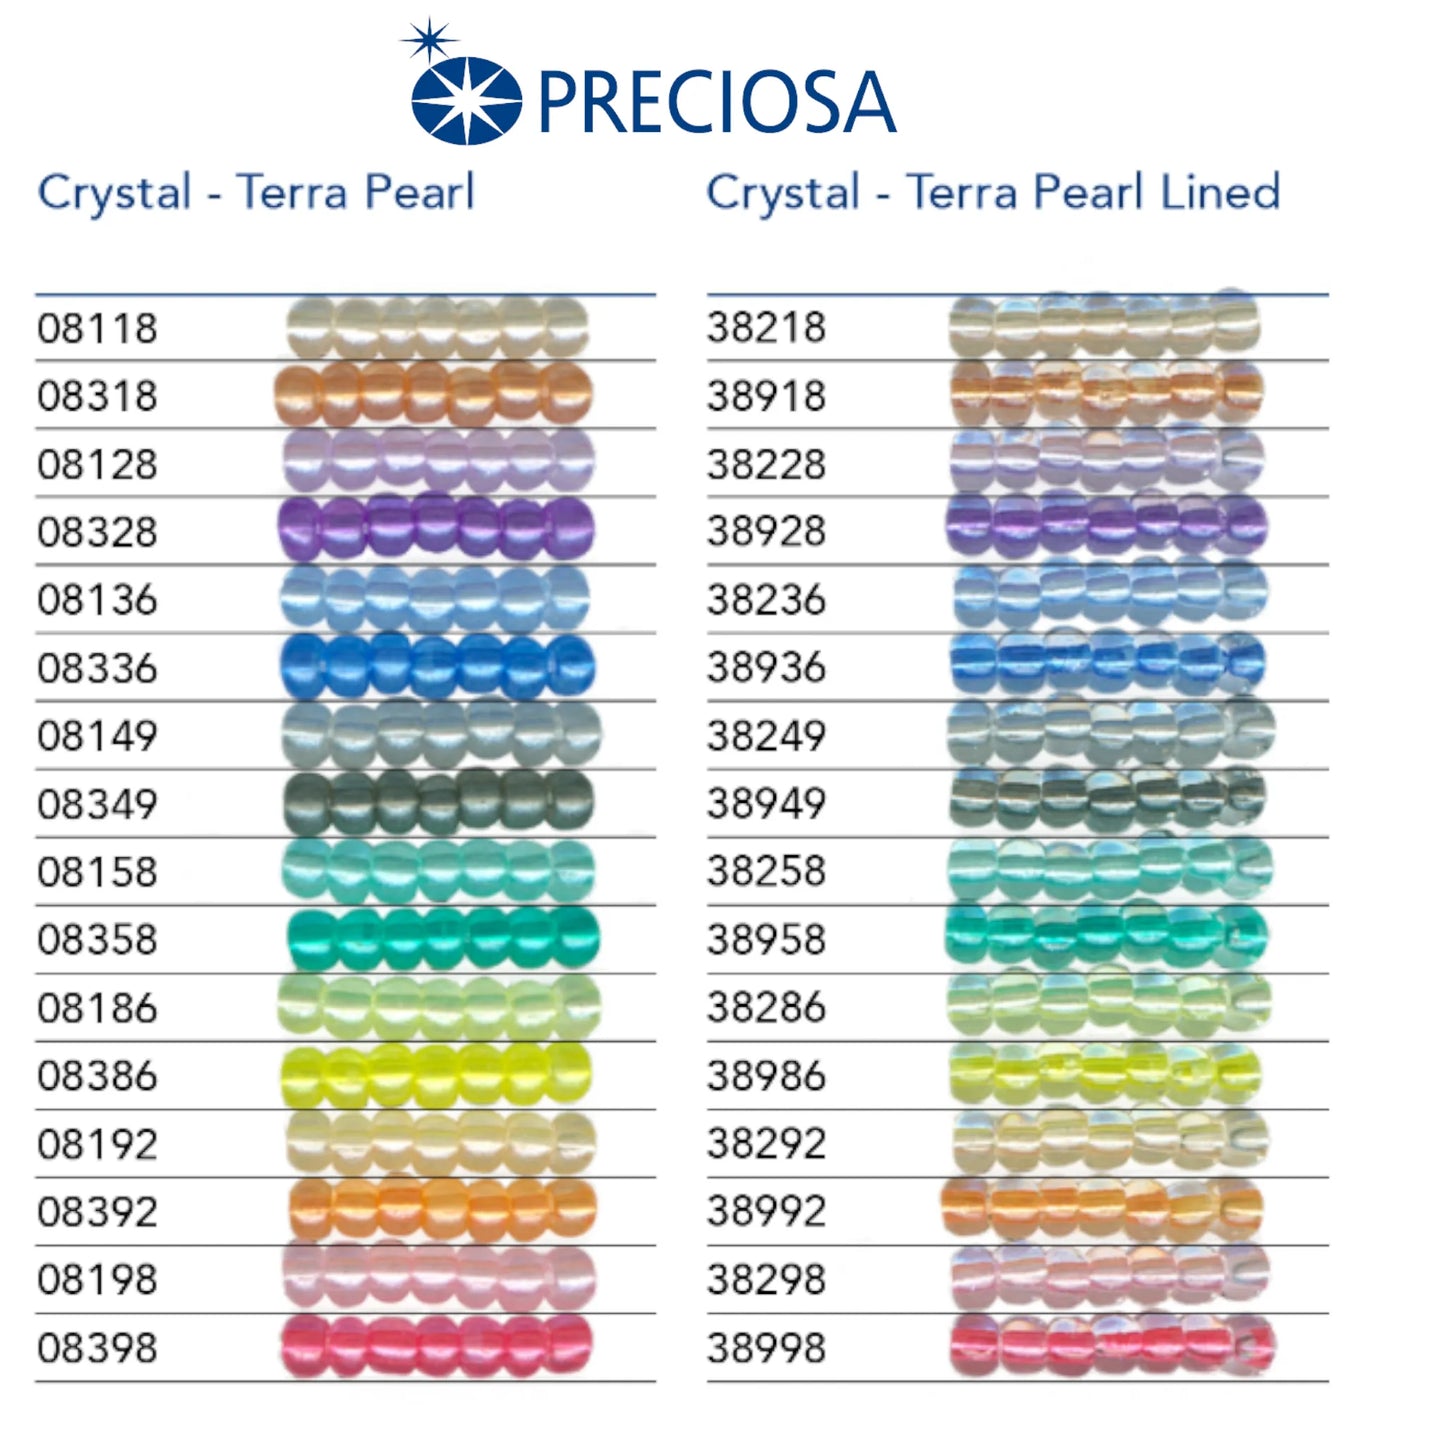 08136 Rocailles tchèques PRECIOSA Rocailles 10/0 bleu clair. Cristal - Terra Perle.